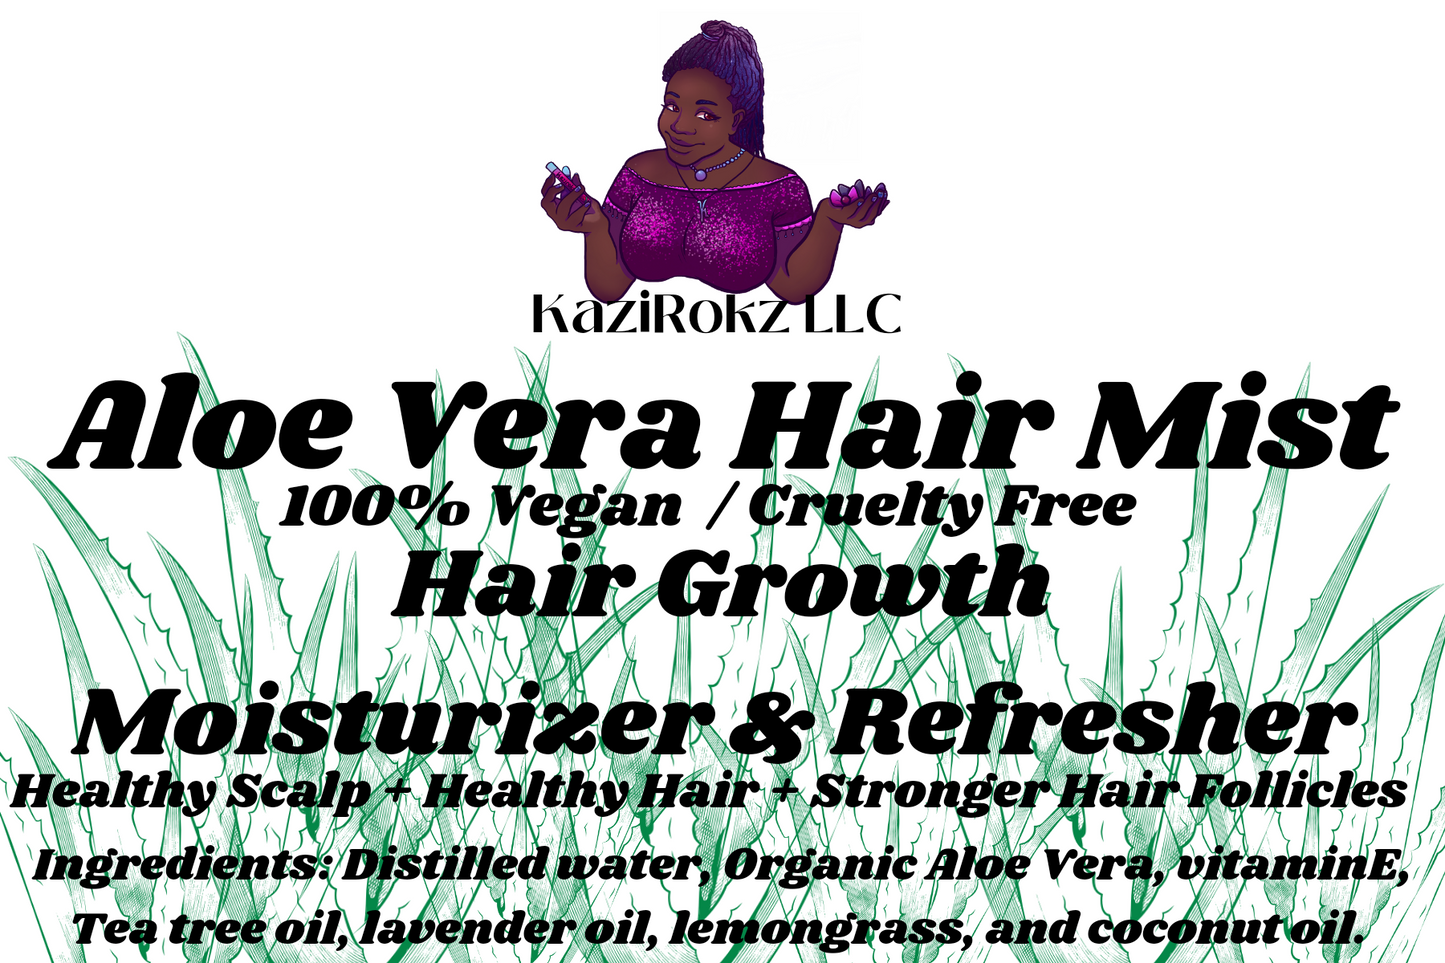 Aloe Vera Hair Mist (100% Vegan/ CrueltyFree) Hair Growth moisturizer and refresher. 4oz